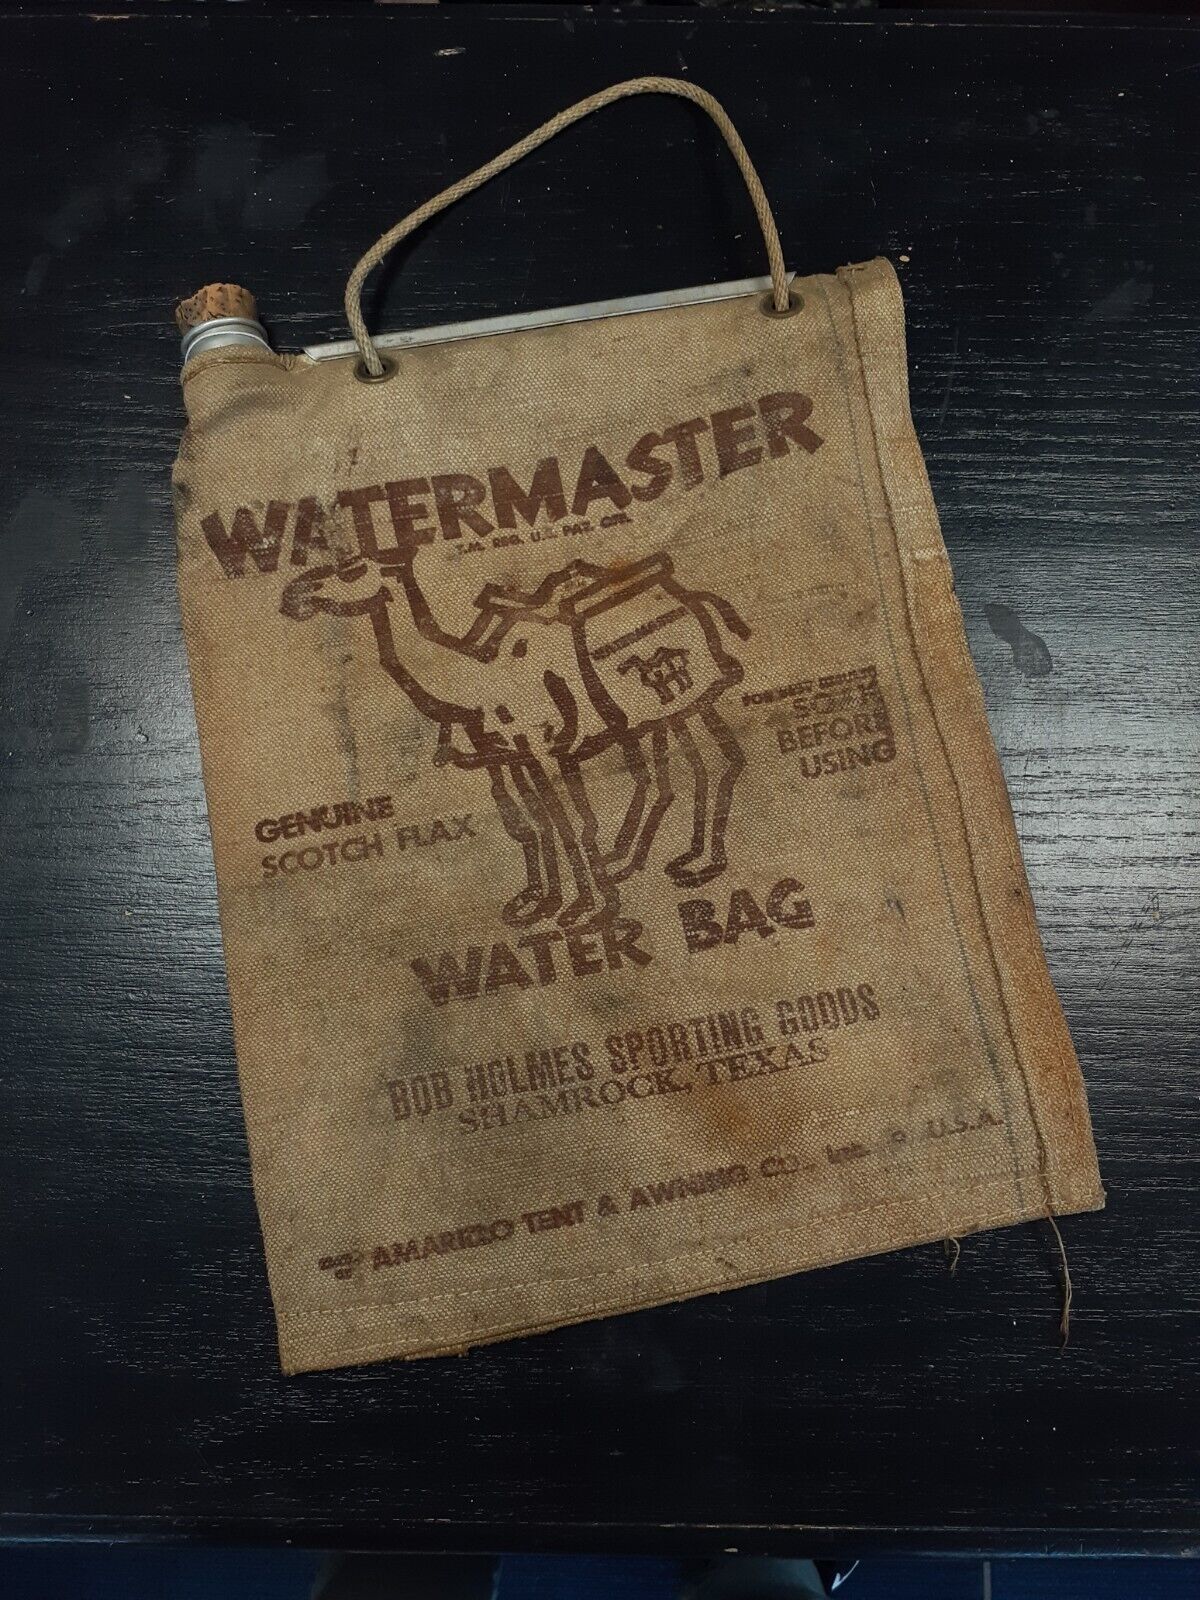 Vintage 1940/50s Watermasters Burlap Waterbag Bob Holmes Spirting Goods Texas